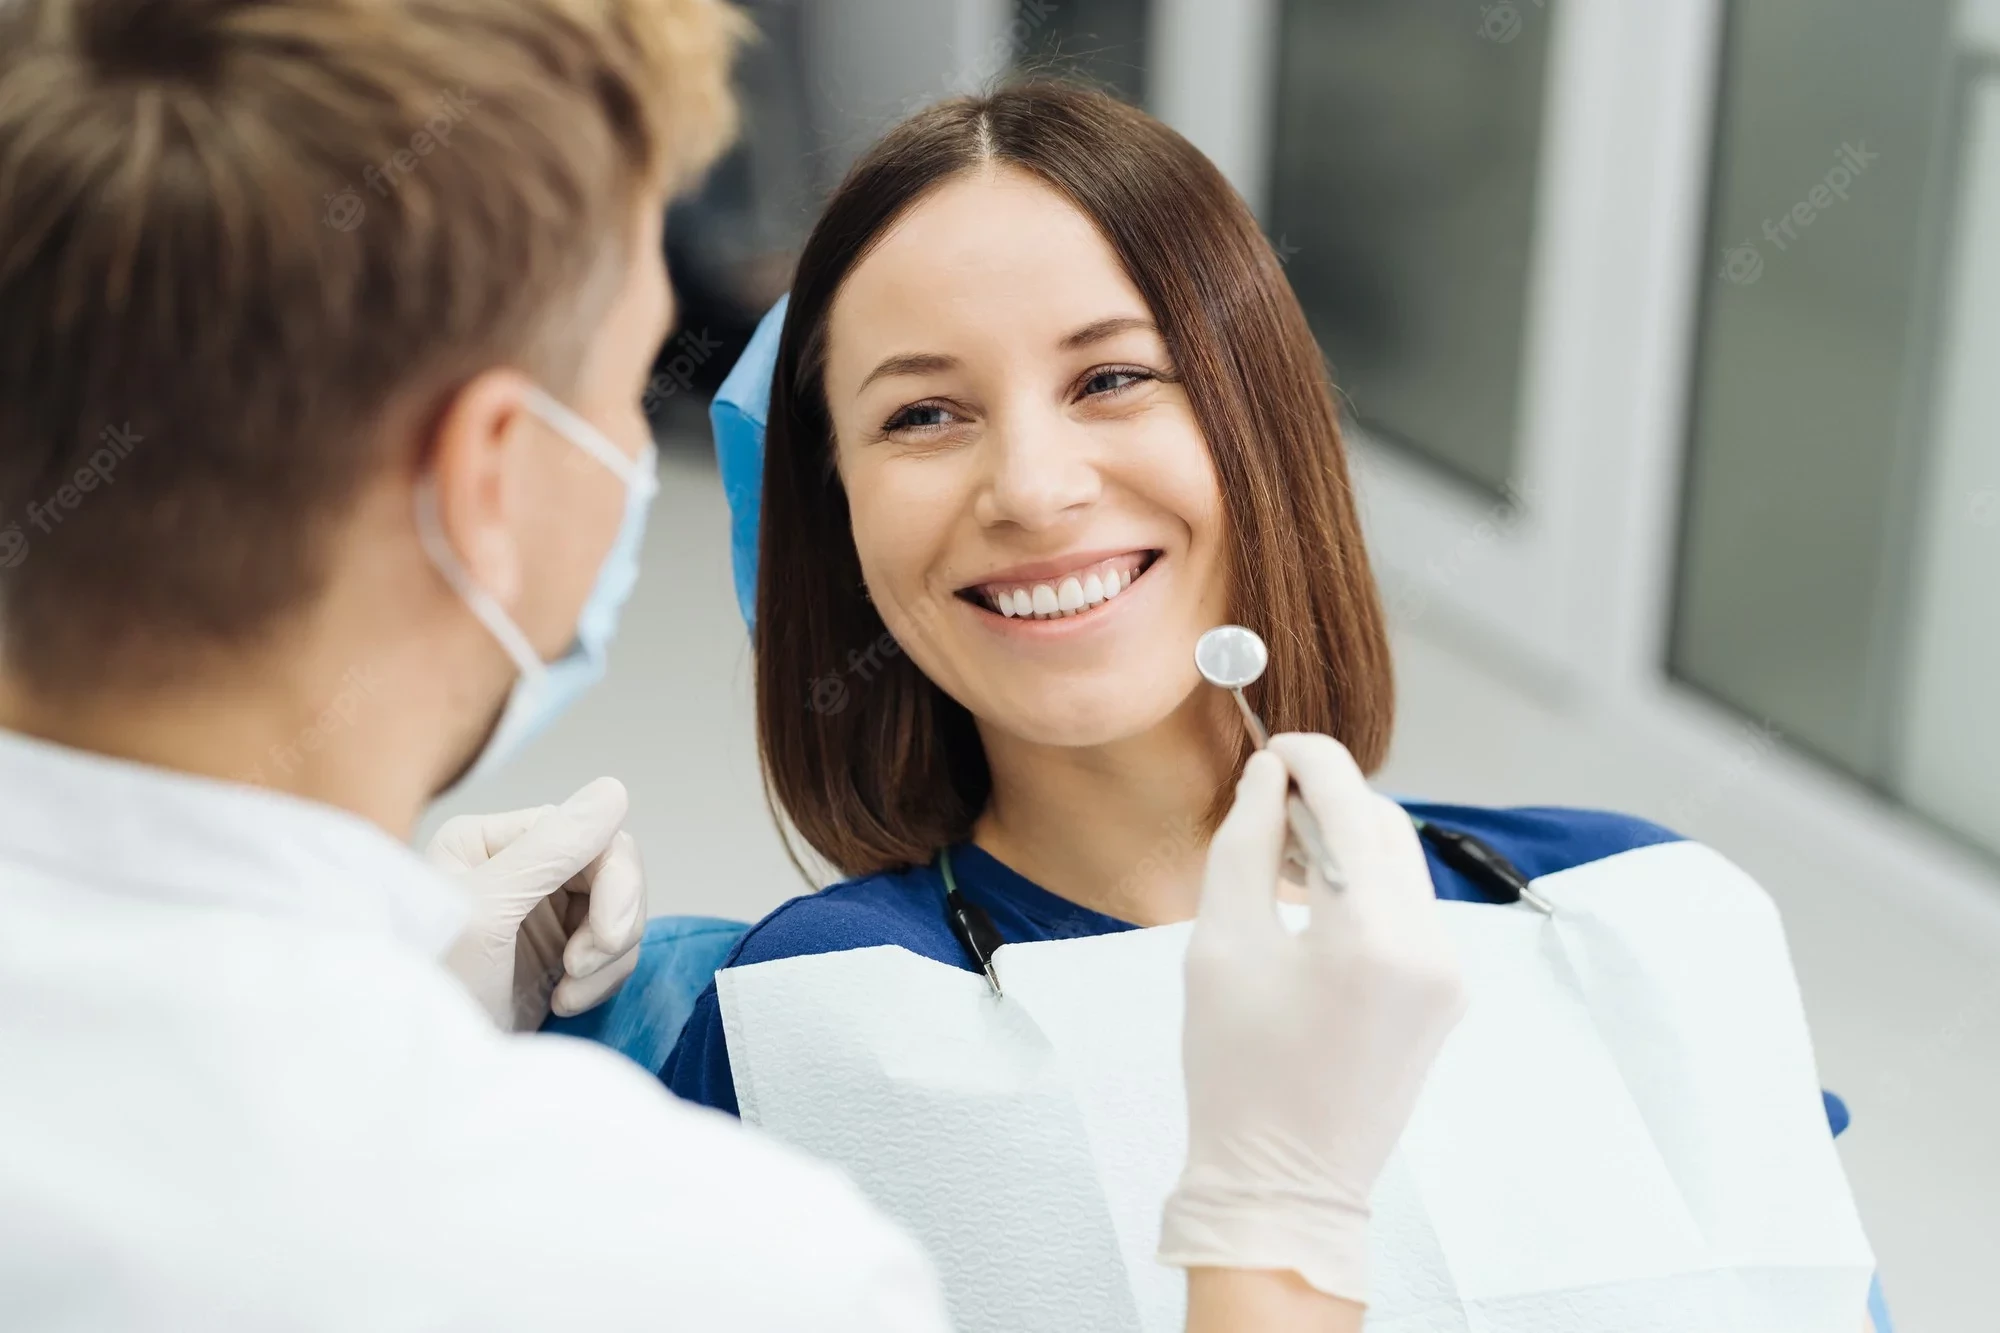 Як часто потрібно проходити стоматологічний огляд?